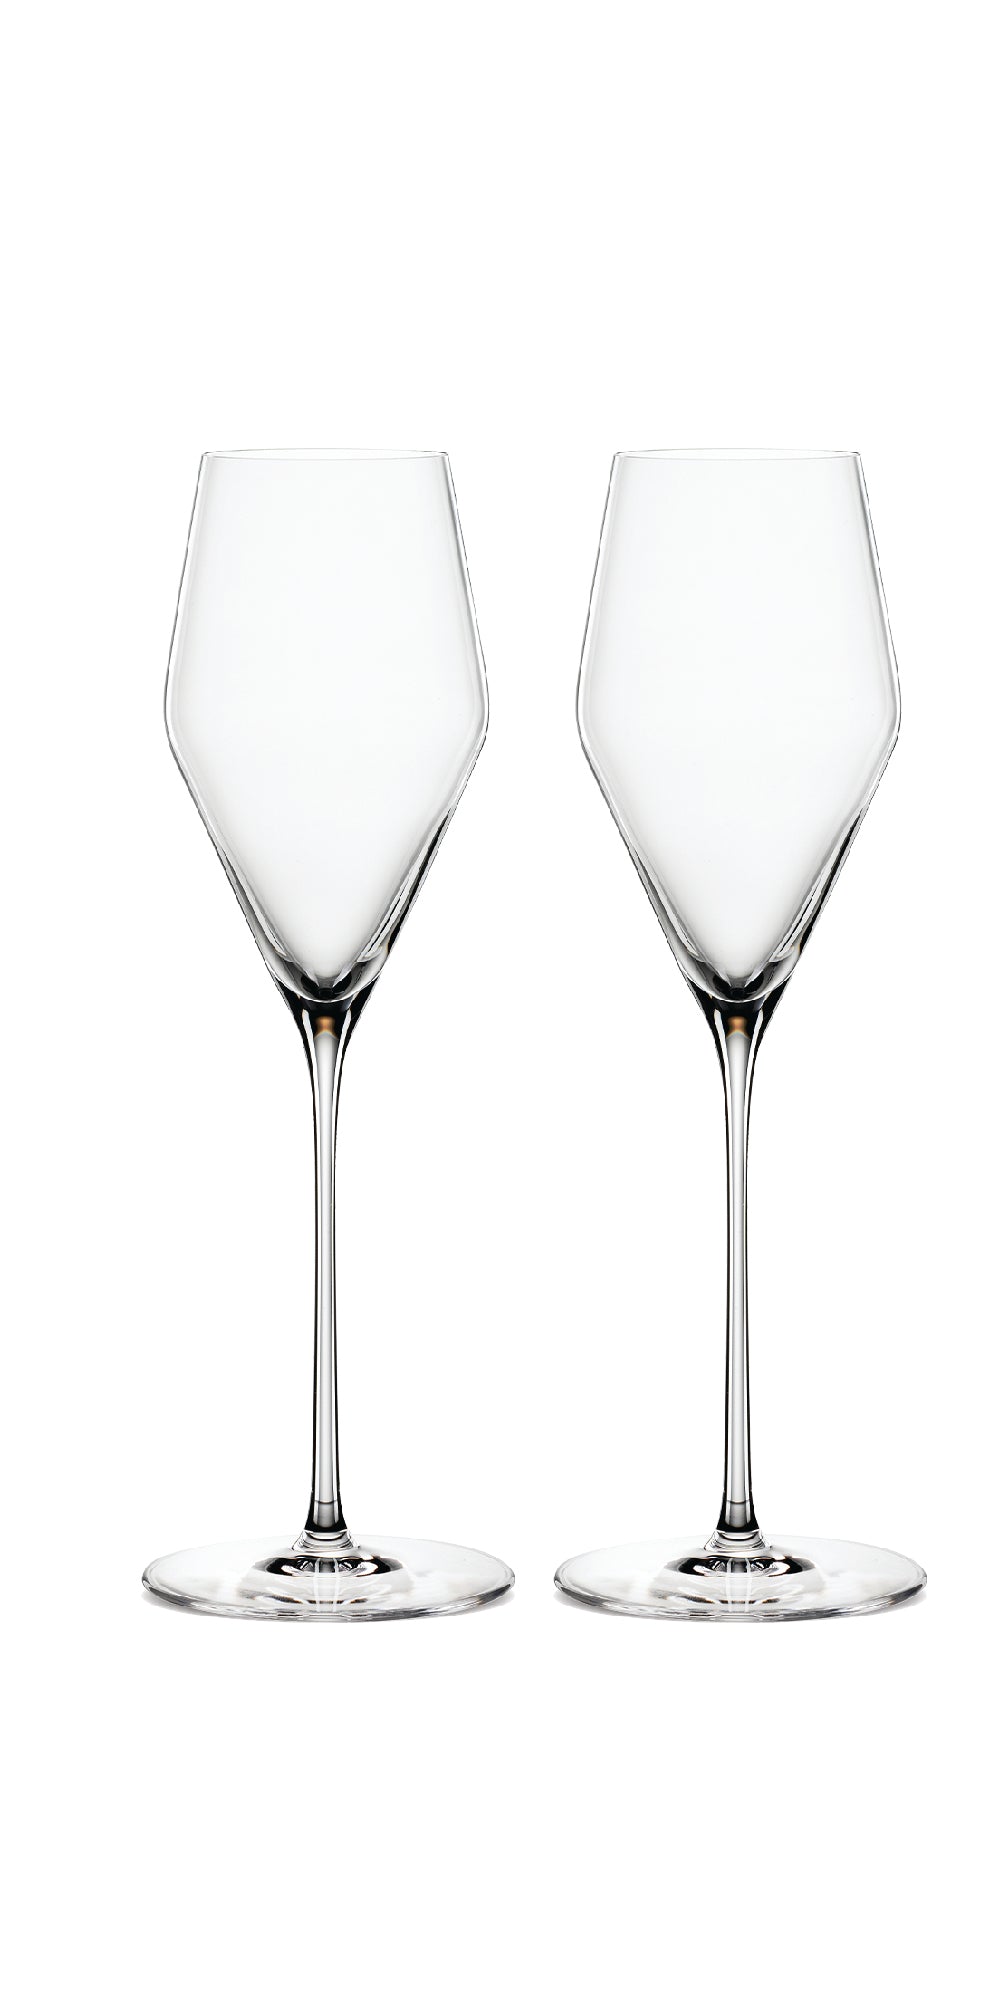 Ripe Wine CO - Champagne Glasses